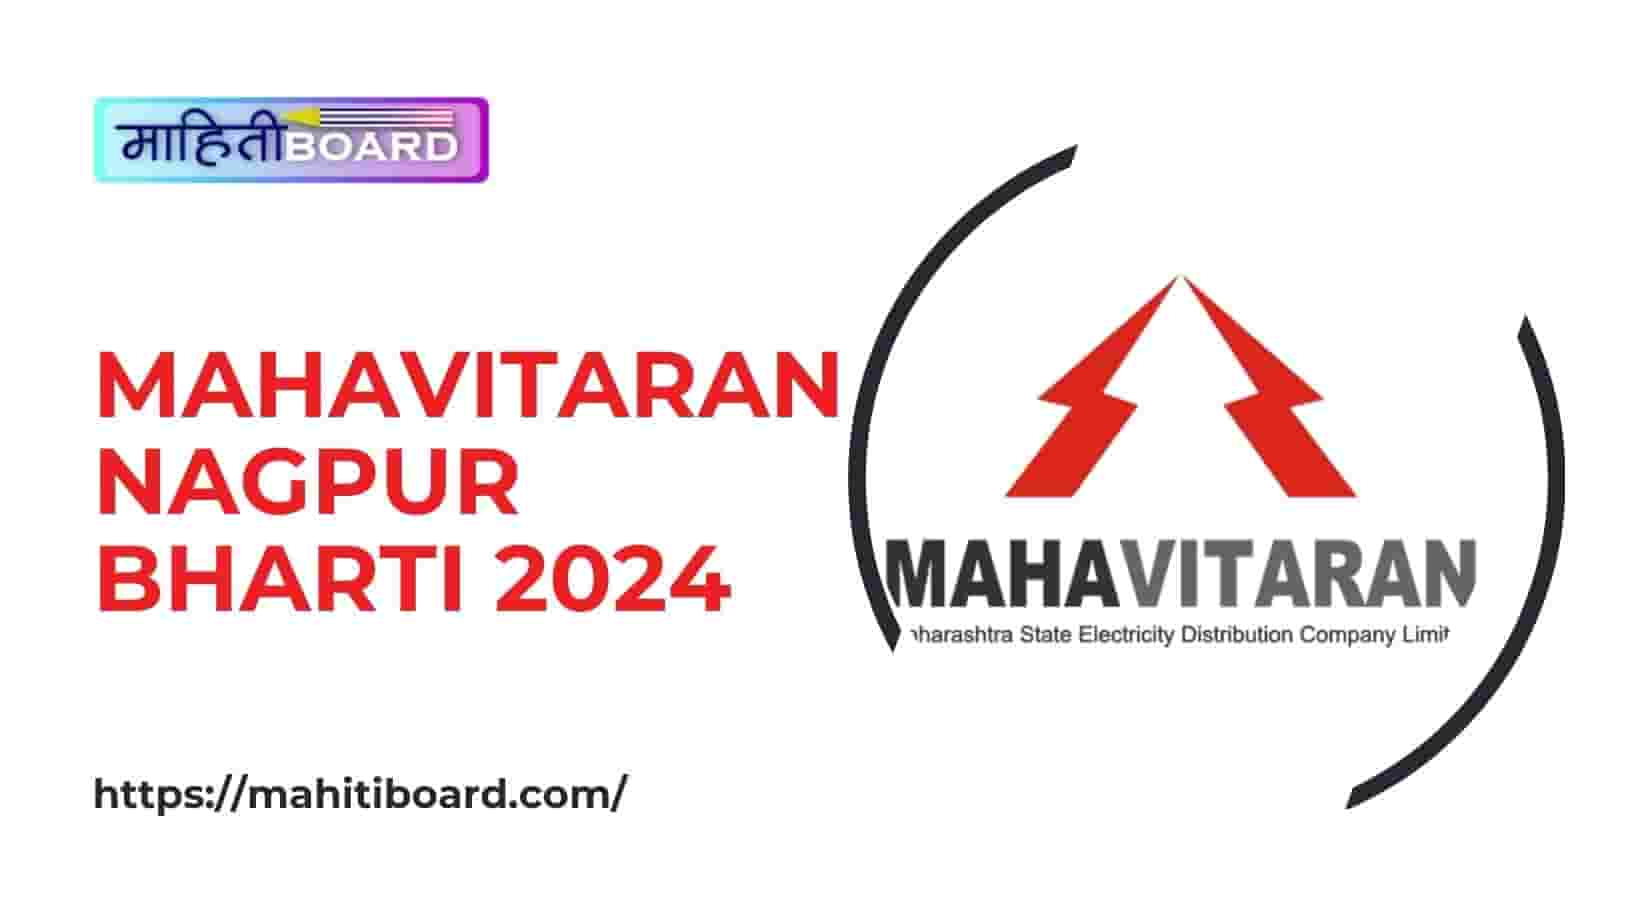 Mahavitaran Nagpur Bharti 2024